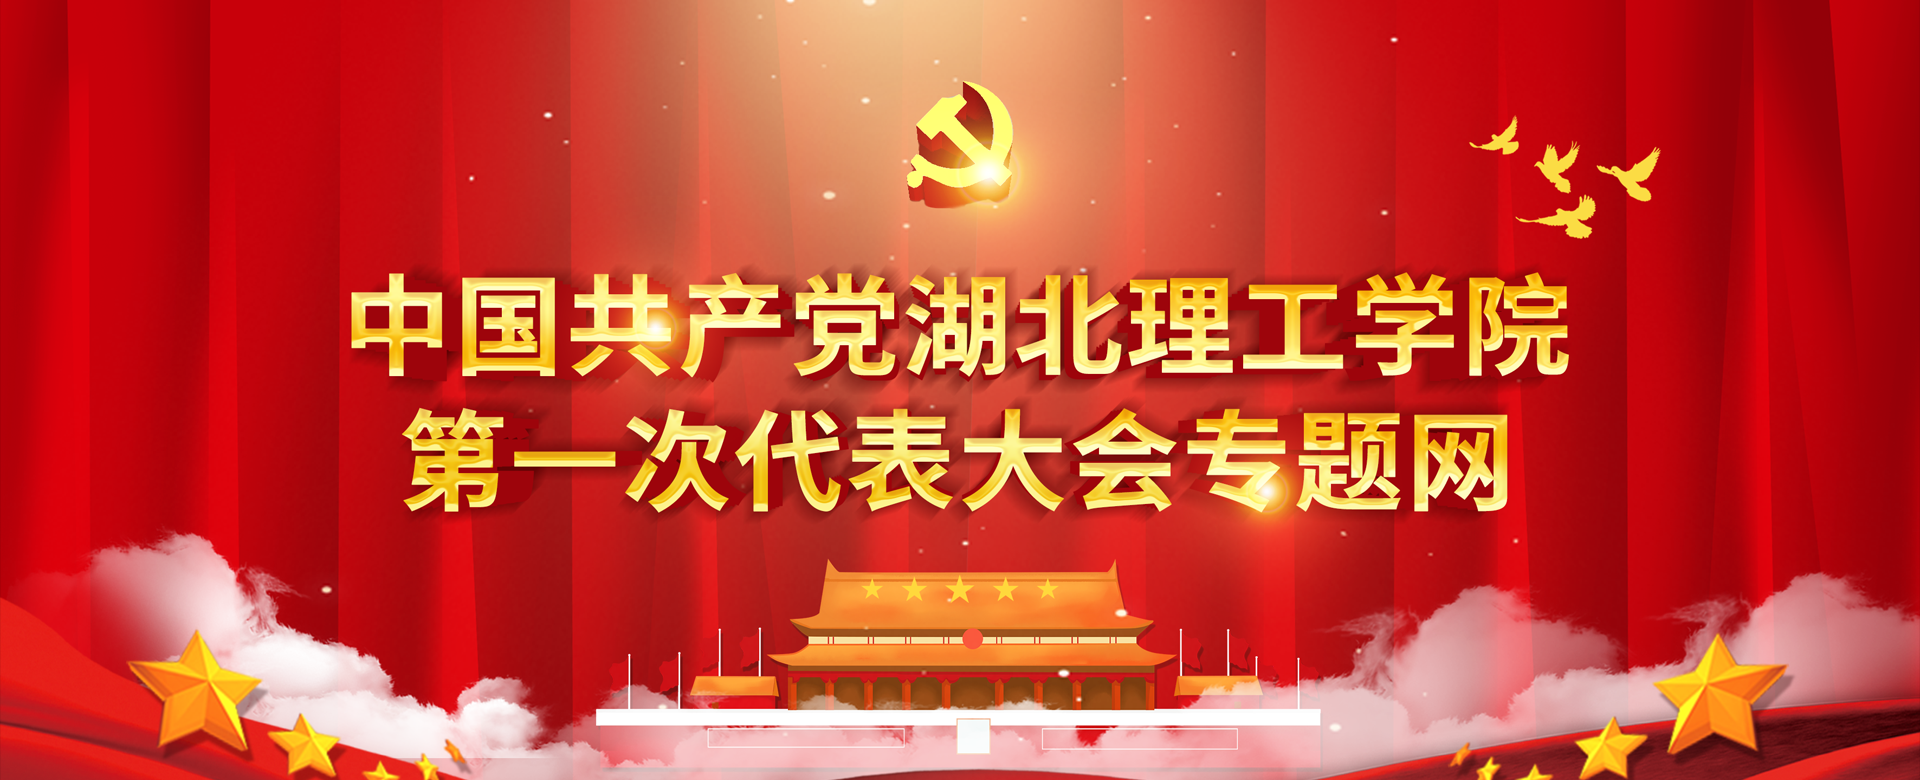 中国共产党湖北理工学院第一次代表大会专题网